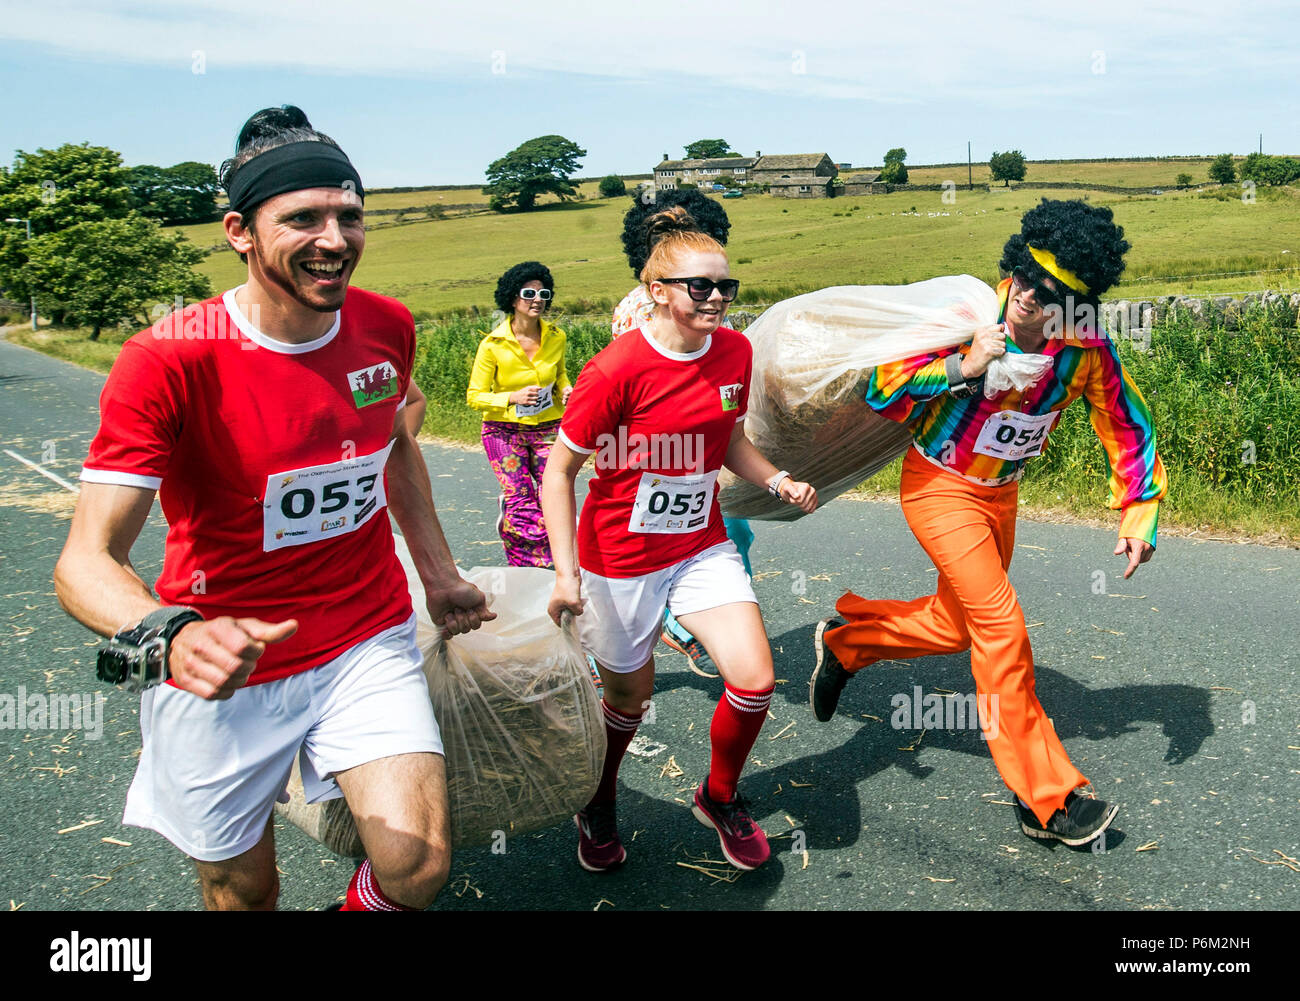 Concurrents prend part à la ferme de la course de la paille dans le Yorkshire, un 2,5 km course en robe portant une botte de paille de 20 kg, tout en arrêtant de pintes de bière le long de la route. Banque D'Images